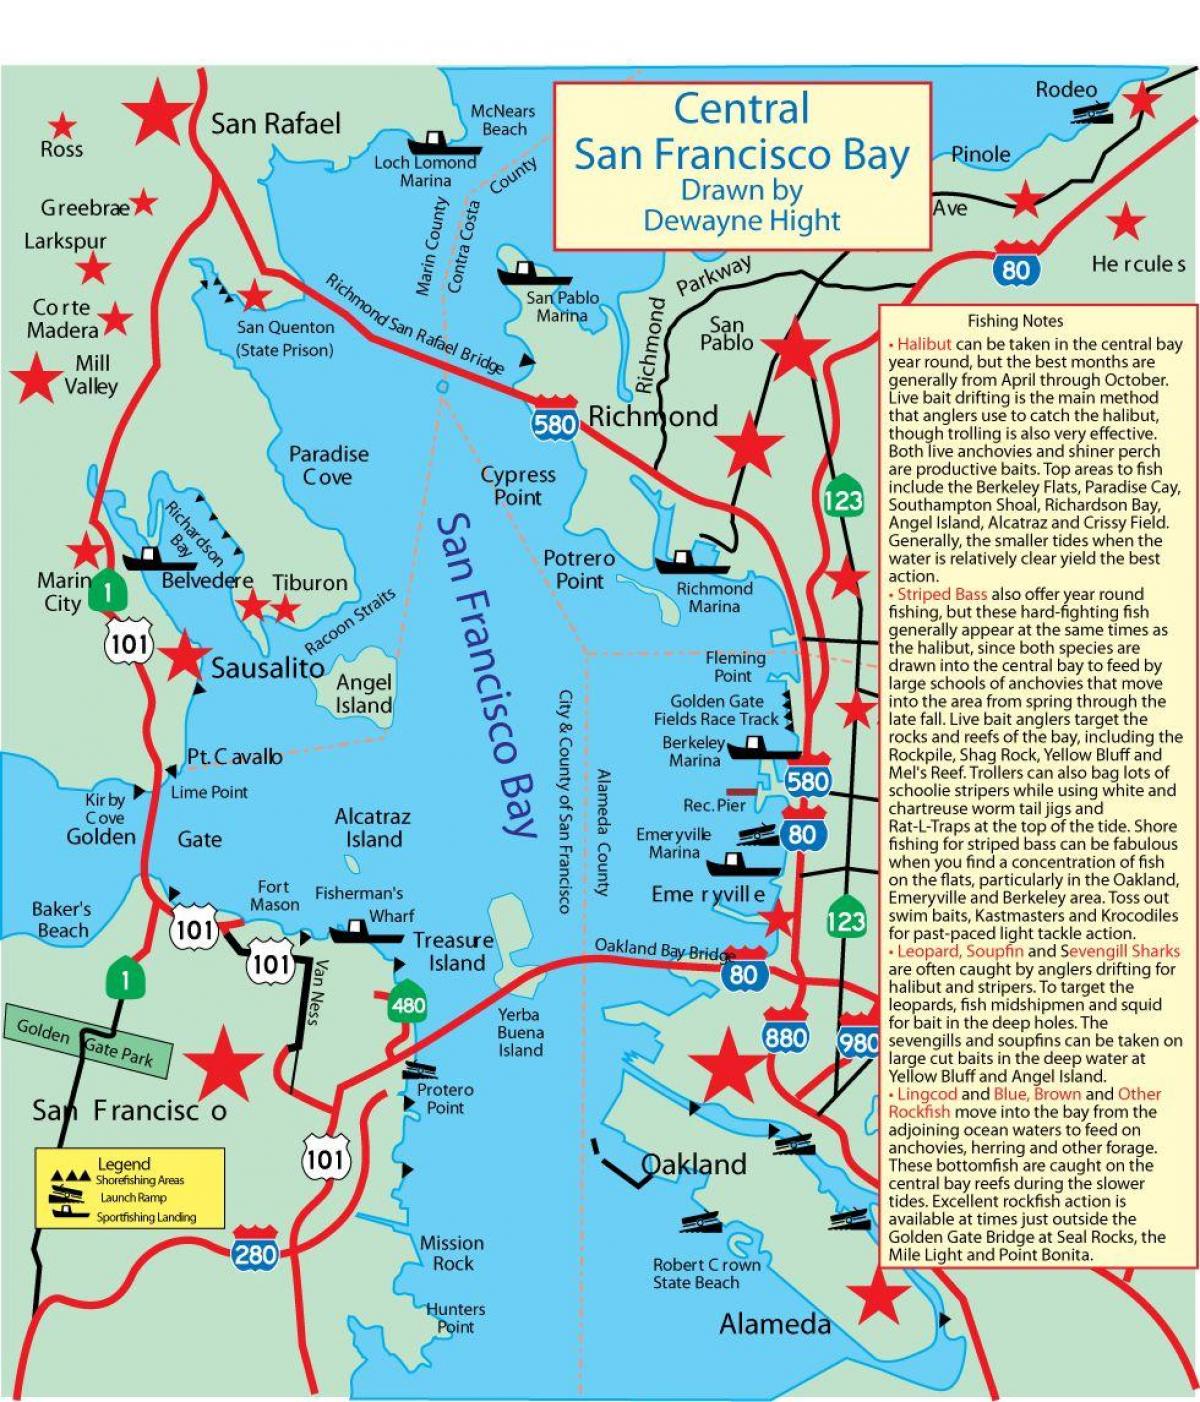 Zemljevid San Francisco bay ribolov 